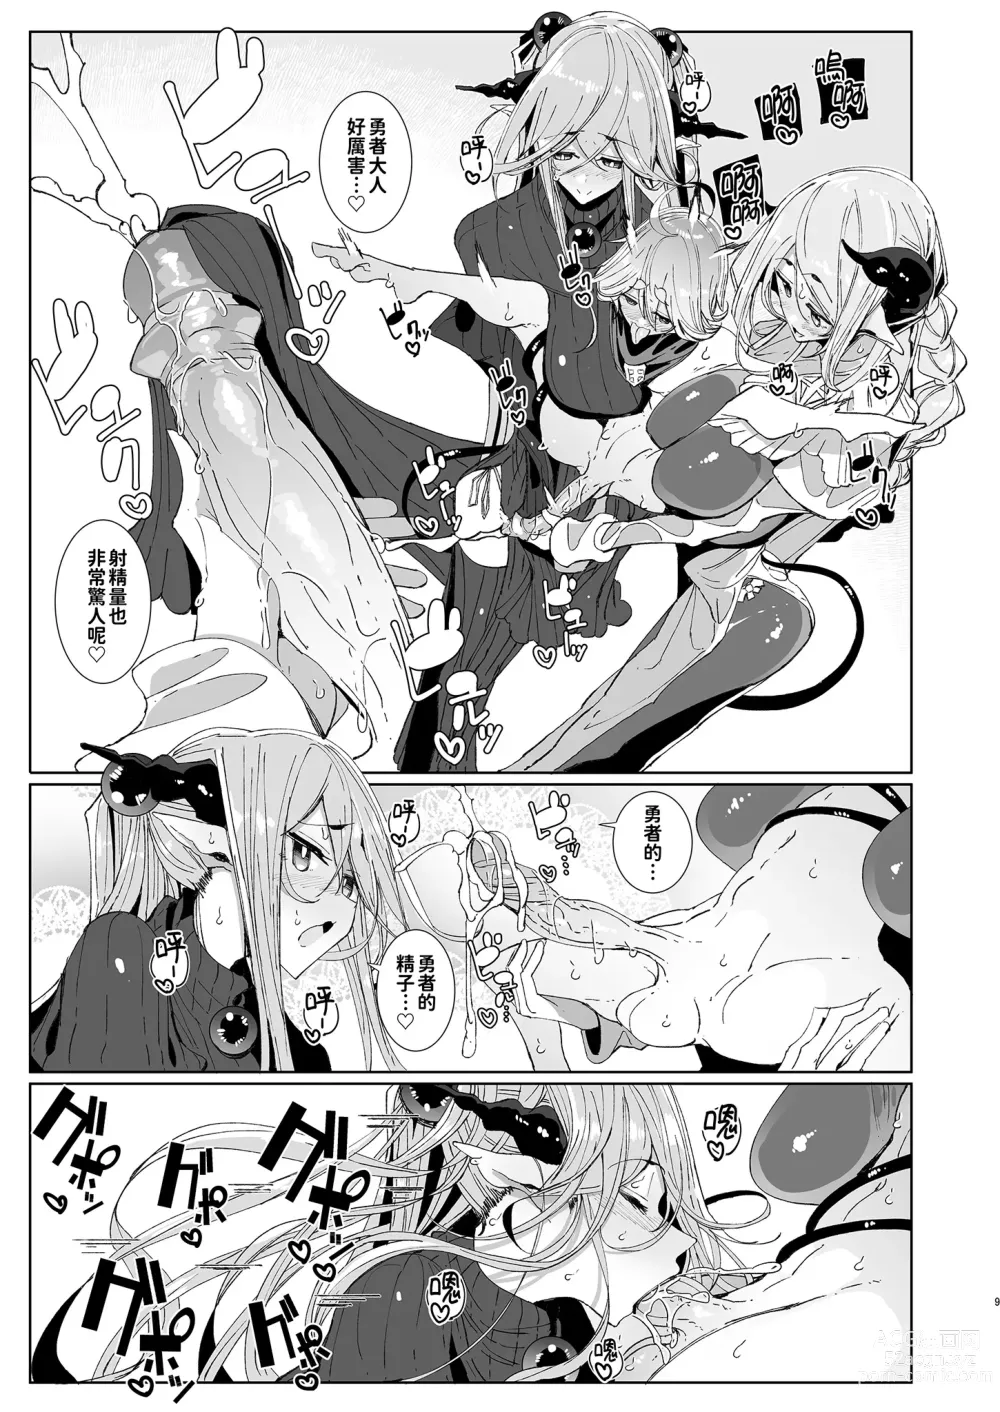 Page 9 of doujinshi 勇者和兩位扶她淫魔在討伐魔王後肯定要做那件事吧! (decensored)